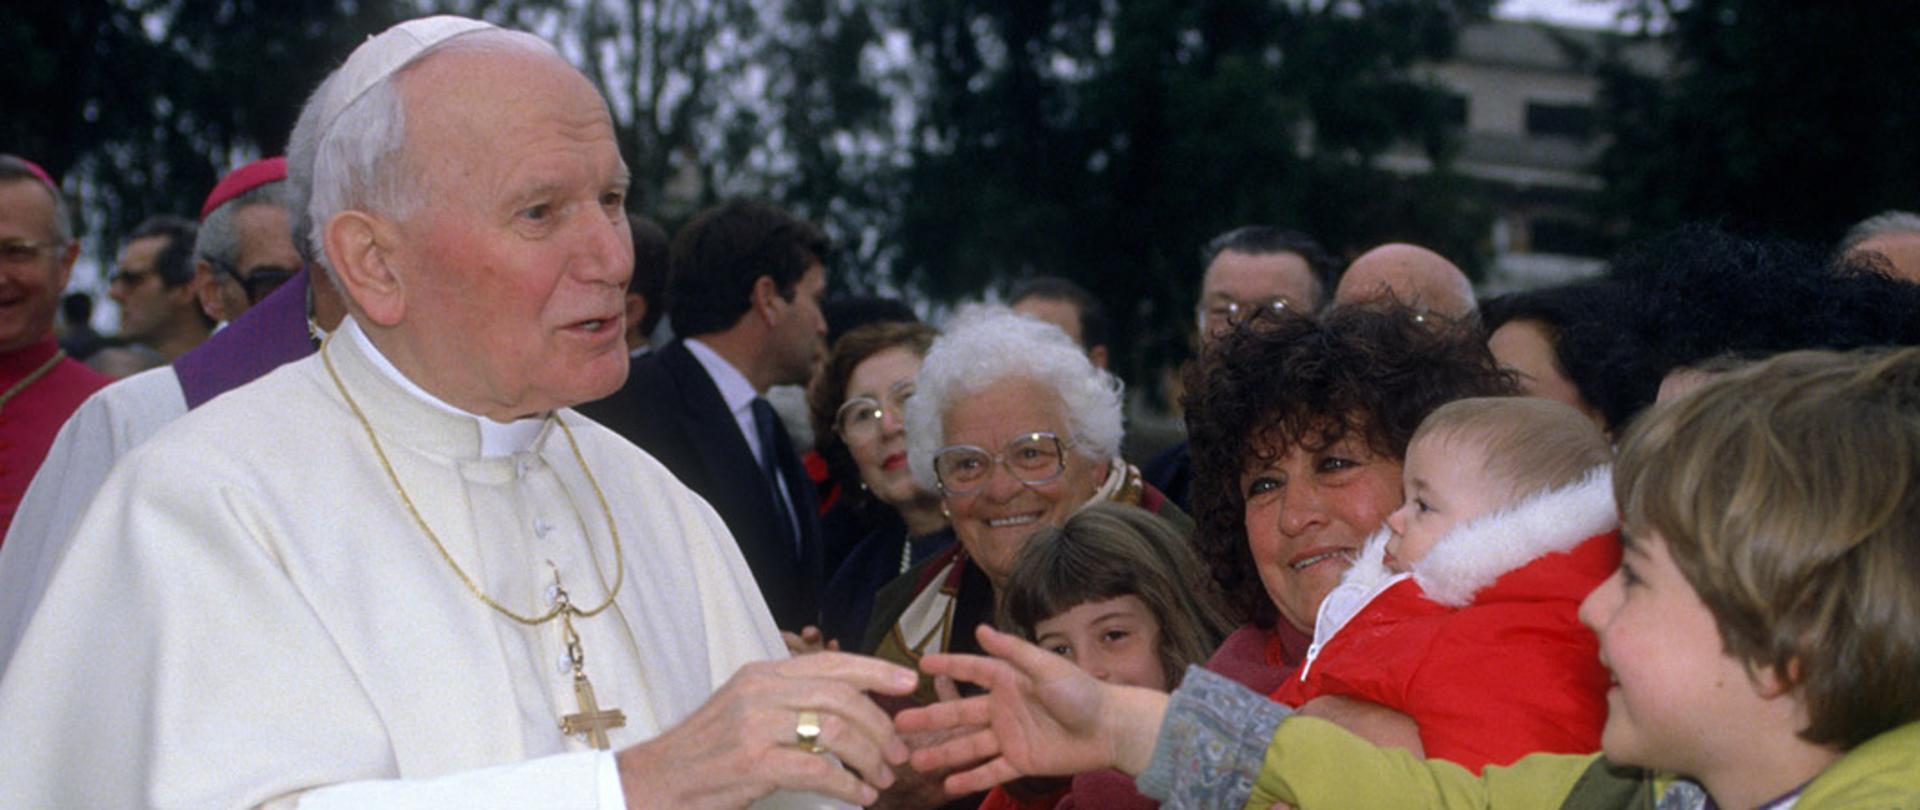 13.03.1994 Roma. Il Papa Giovanni Paolo II visita la parrocchia di San Francesco di Sales. Il Santo Padre saluta i bambini.